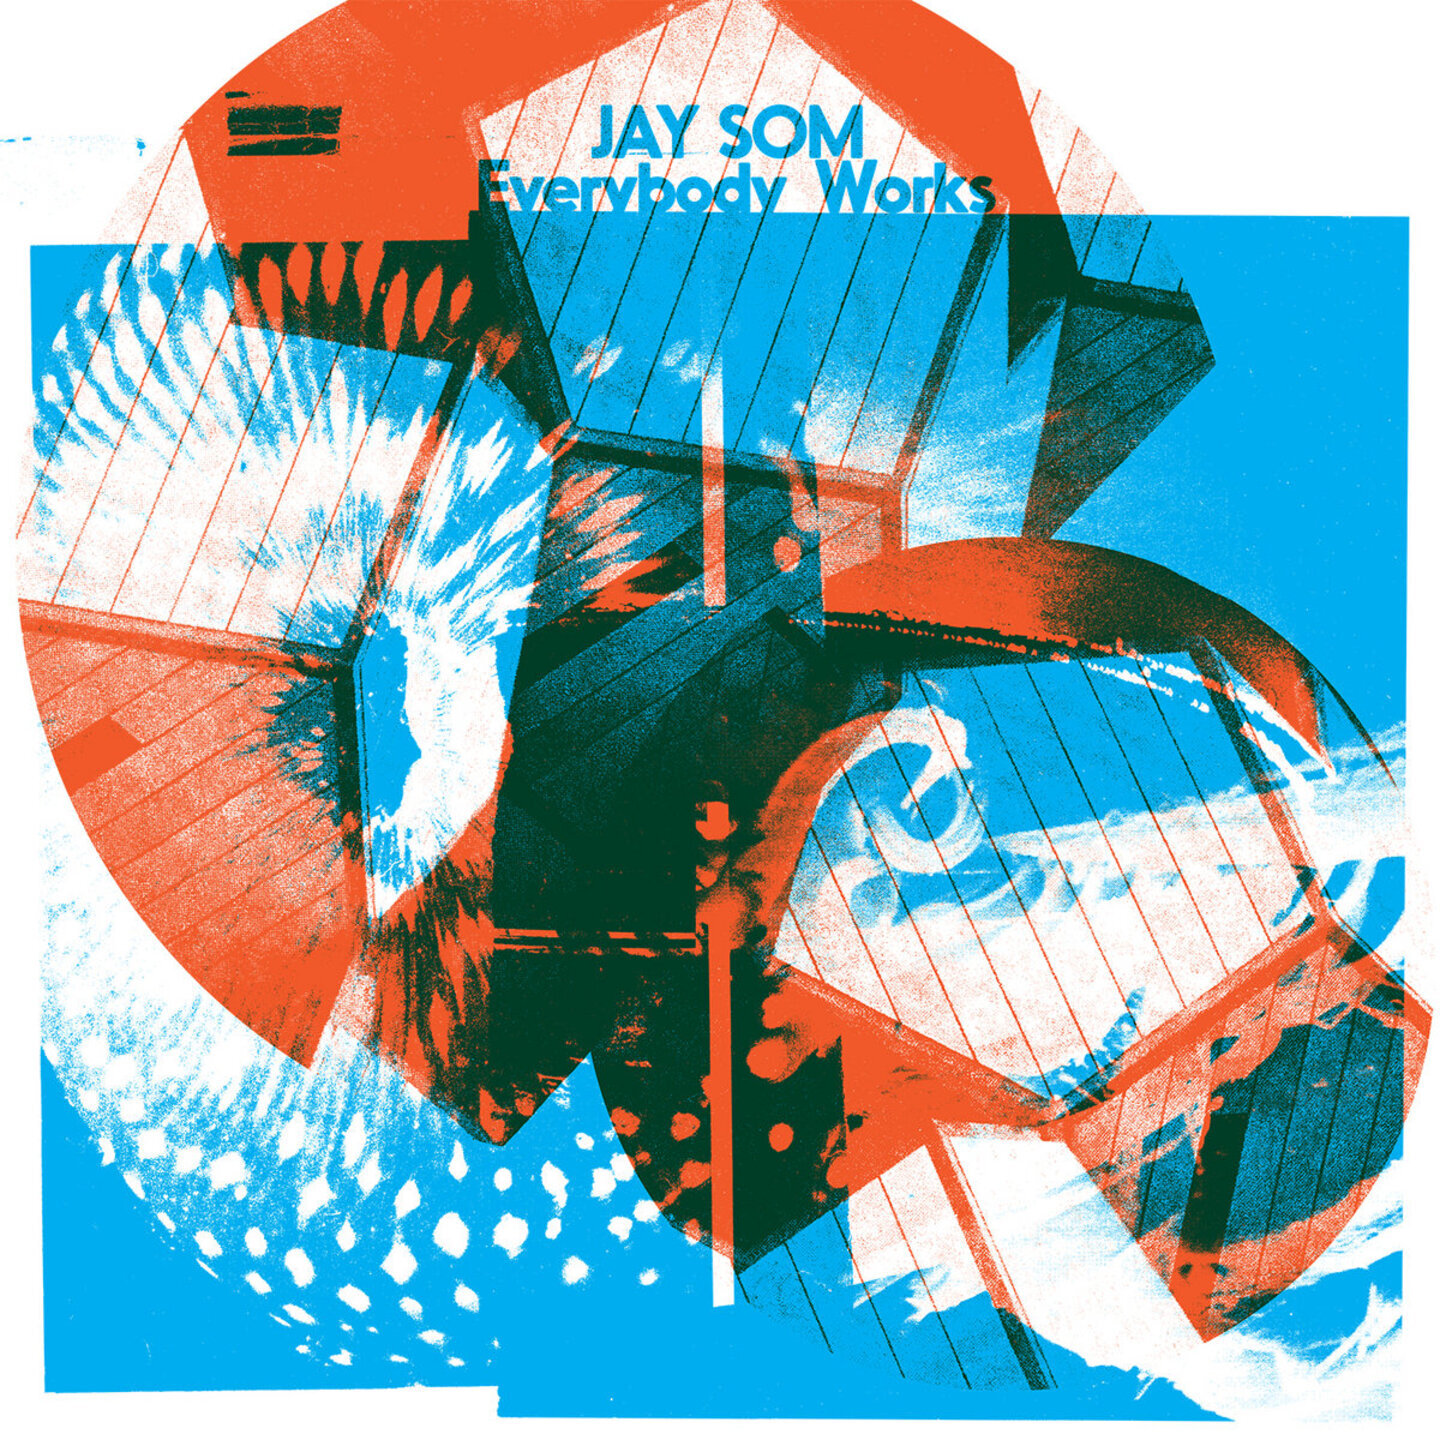 JAY SOM - Everybody Works LP Orange Vinyl